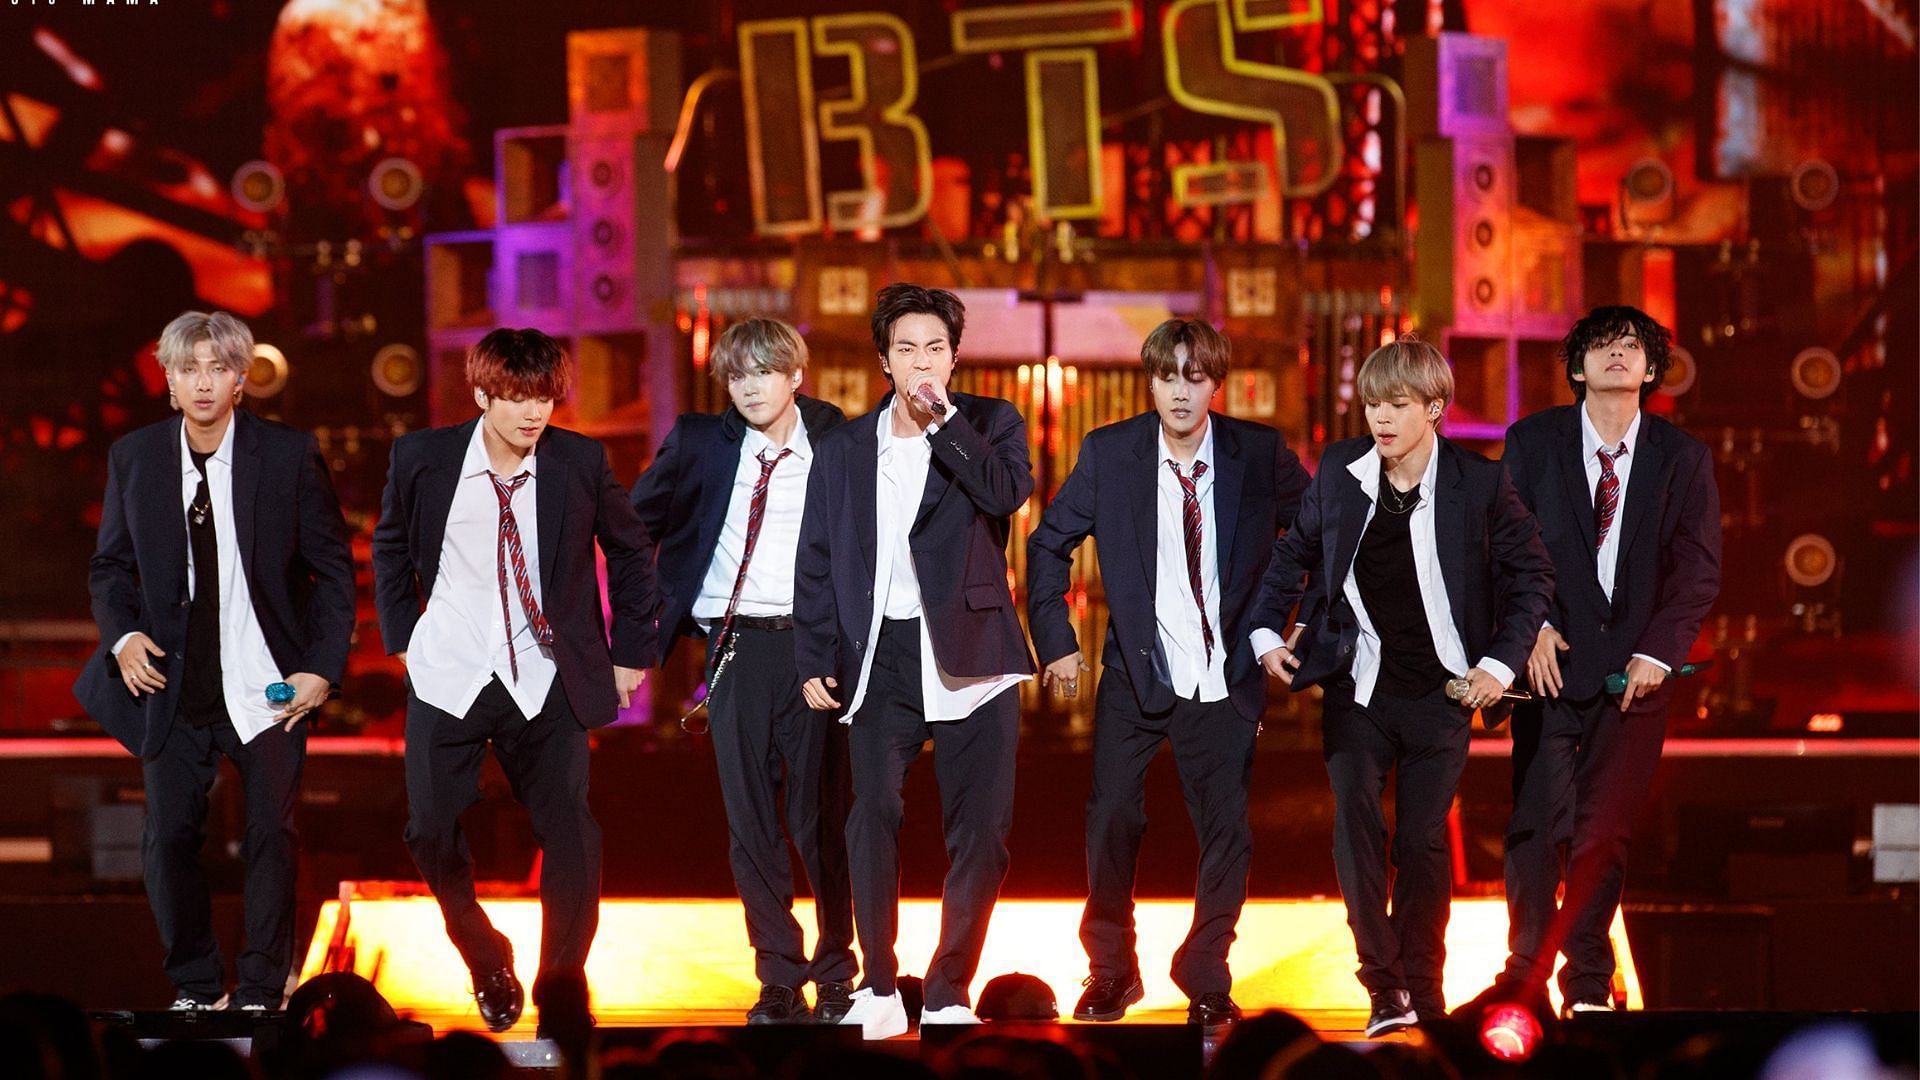 BTS at the 2019 MAMA Awards (Image via Twitter/MnetMAMA)